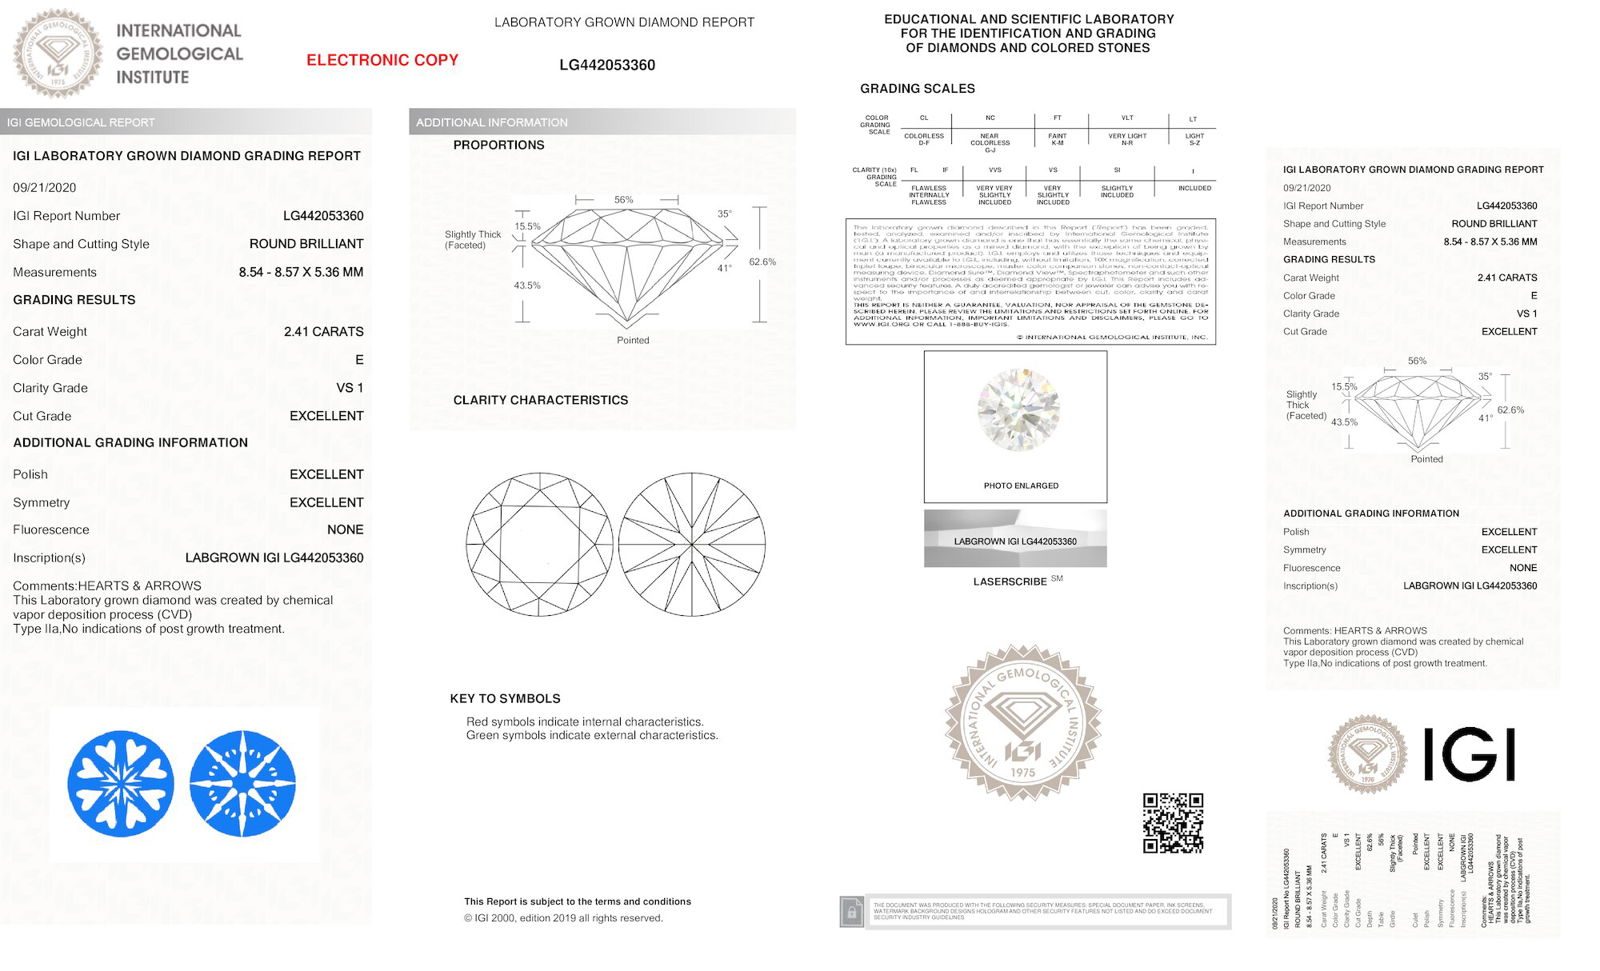 Certificate of diamond 2.41 Carat Round Diamond